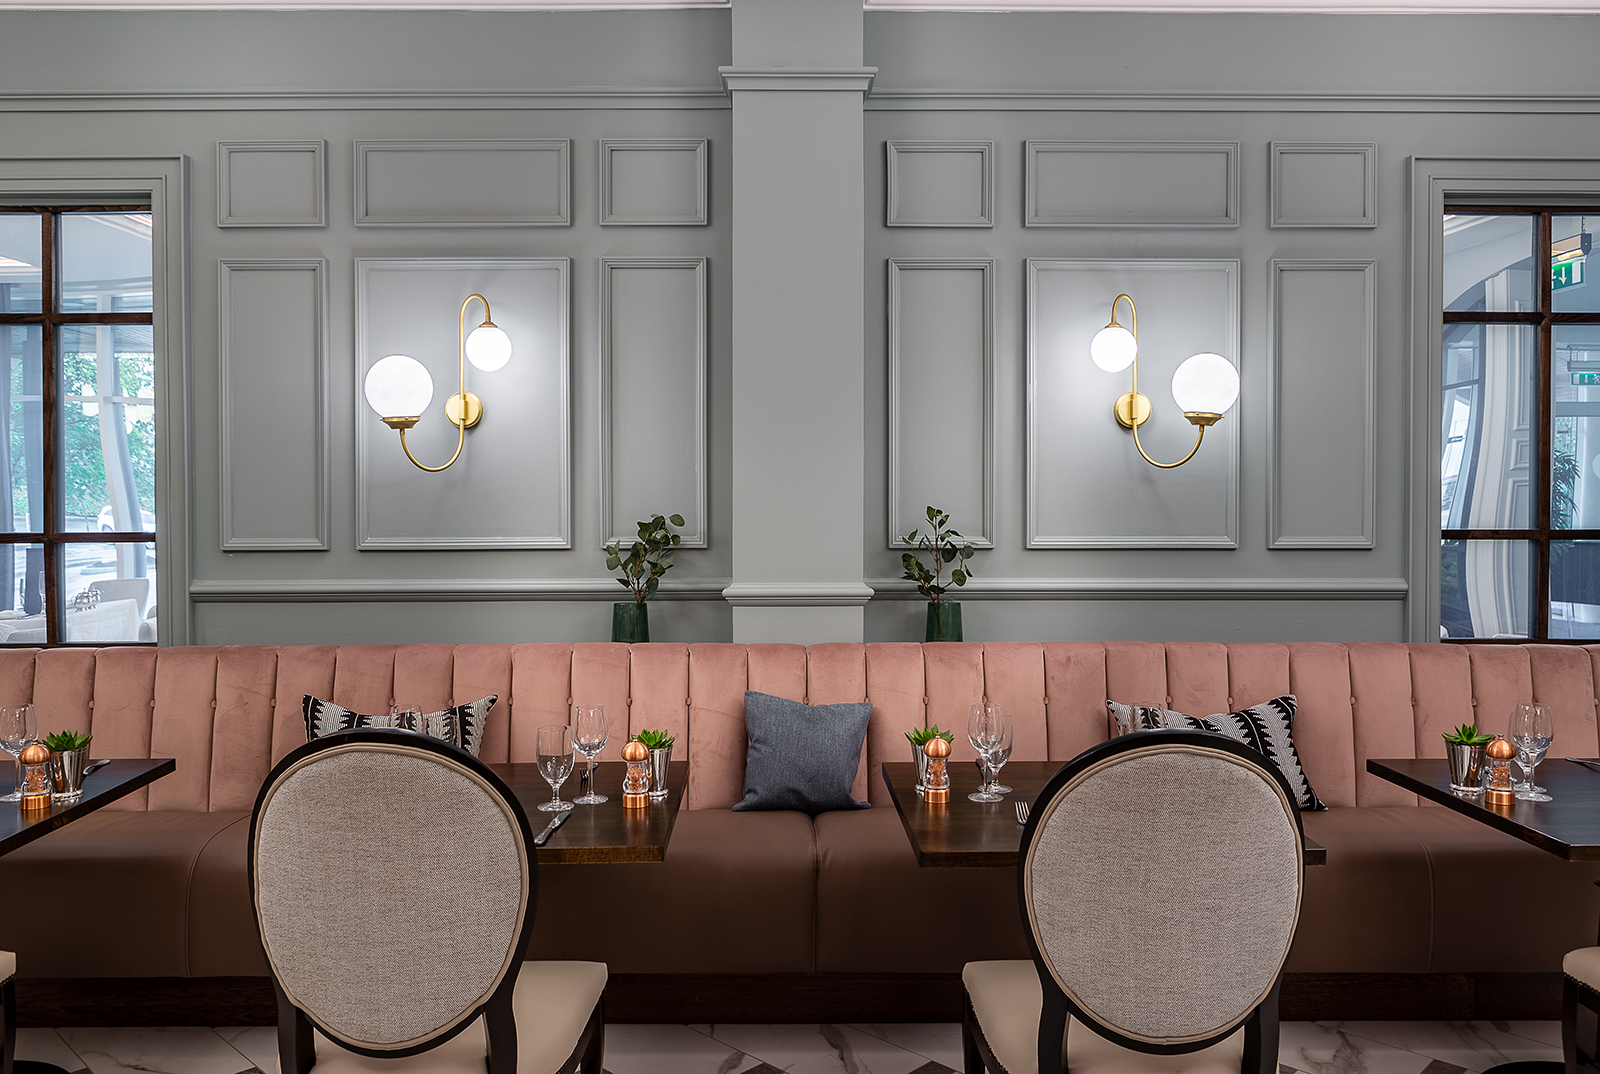 Bespoke Elegant Light Fittings in this Stunning Laois Hotel